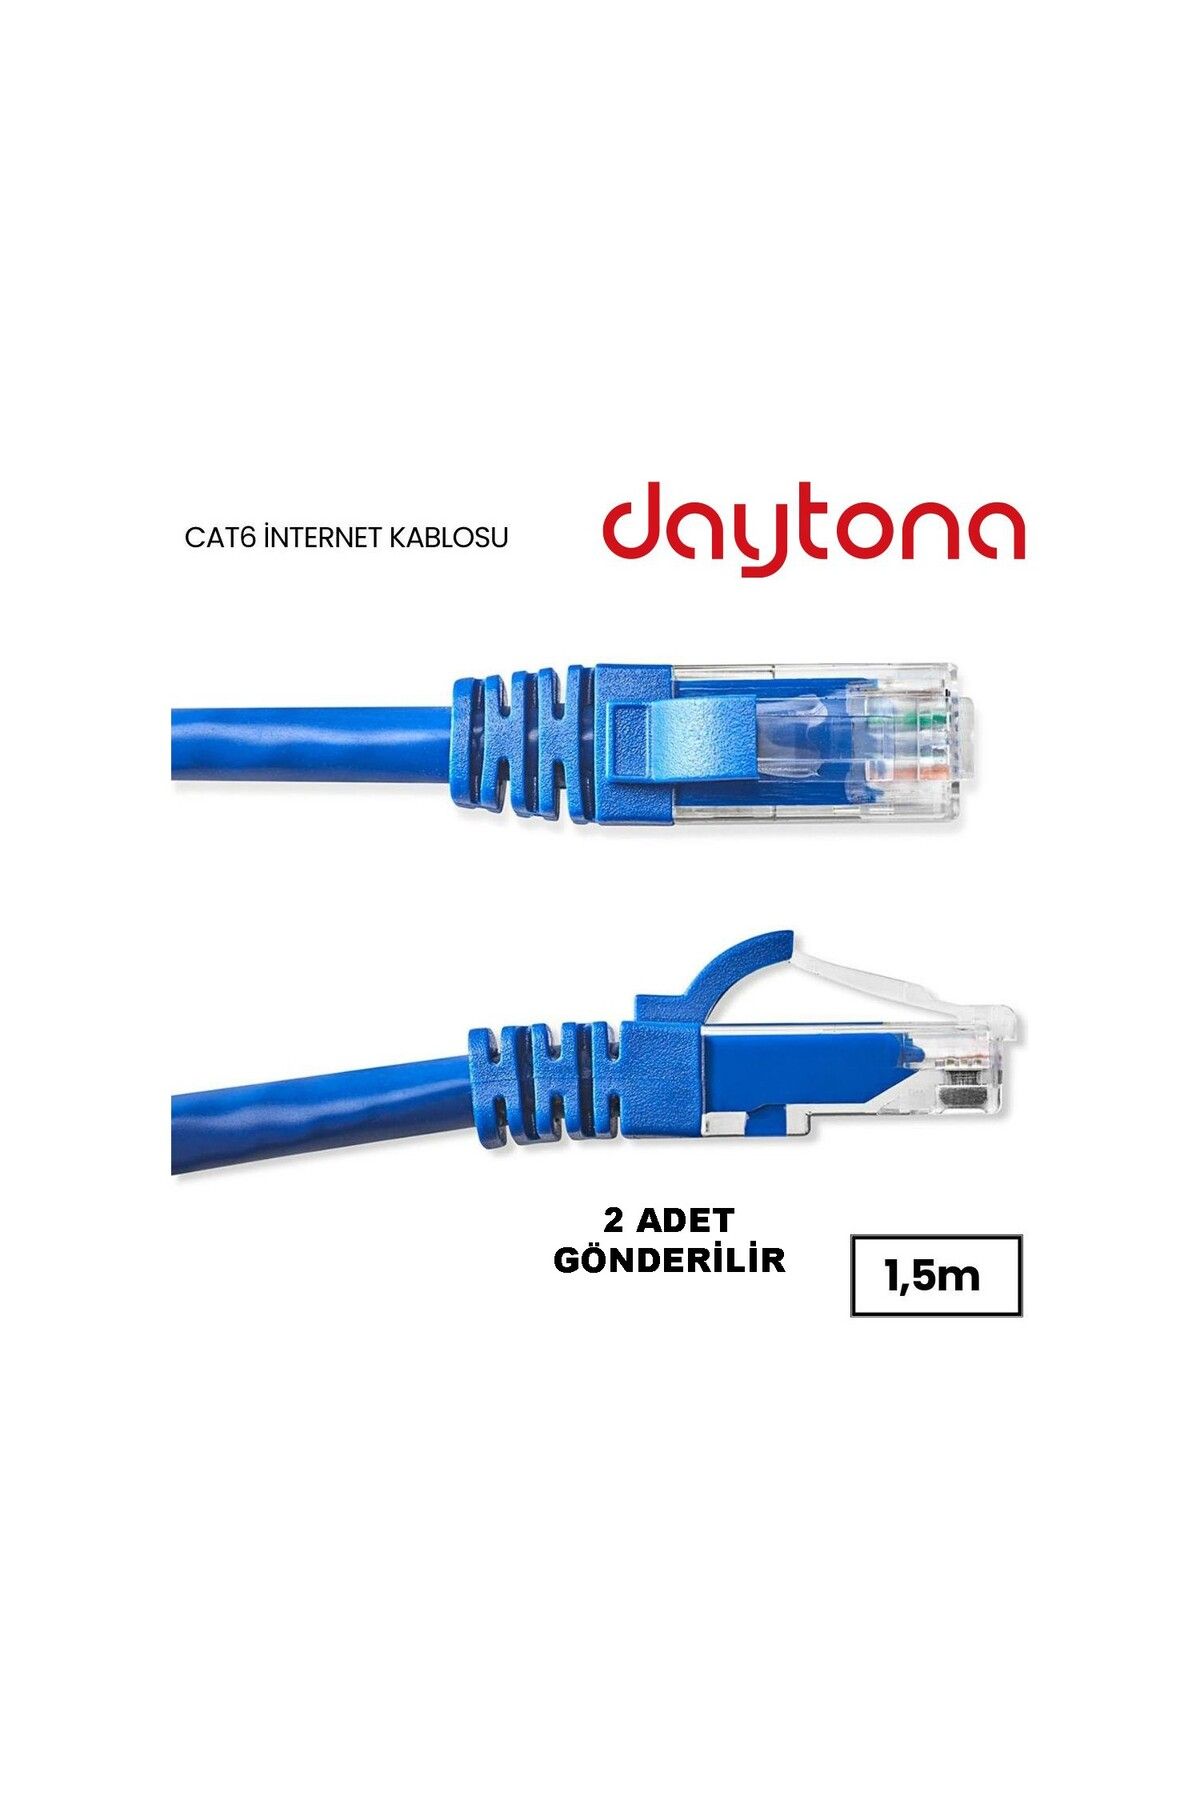 Daytona A5208 Cat6 Gigabit Internet Ethernet 10gbps Rj45 Lan Kablosu 1,5 Metre (2 ADET)